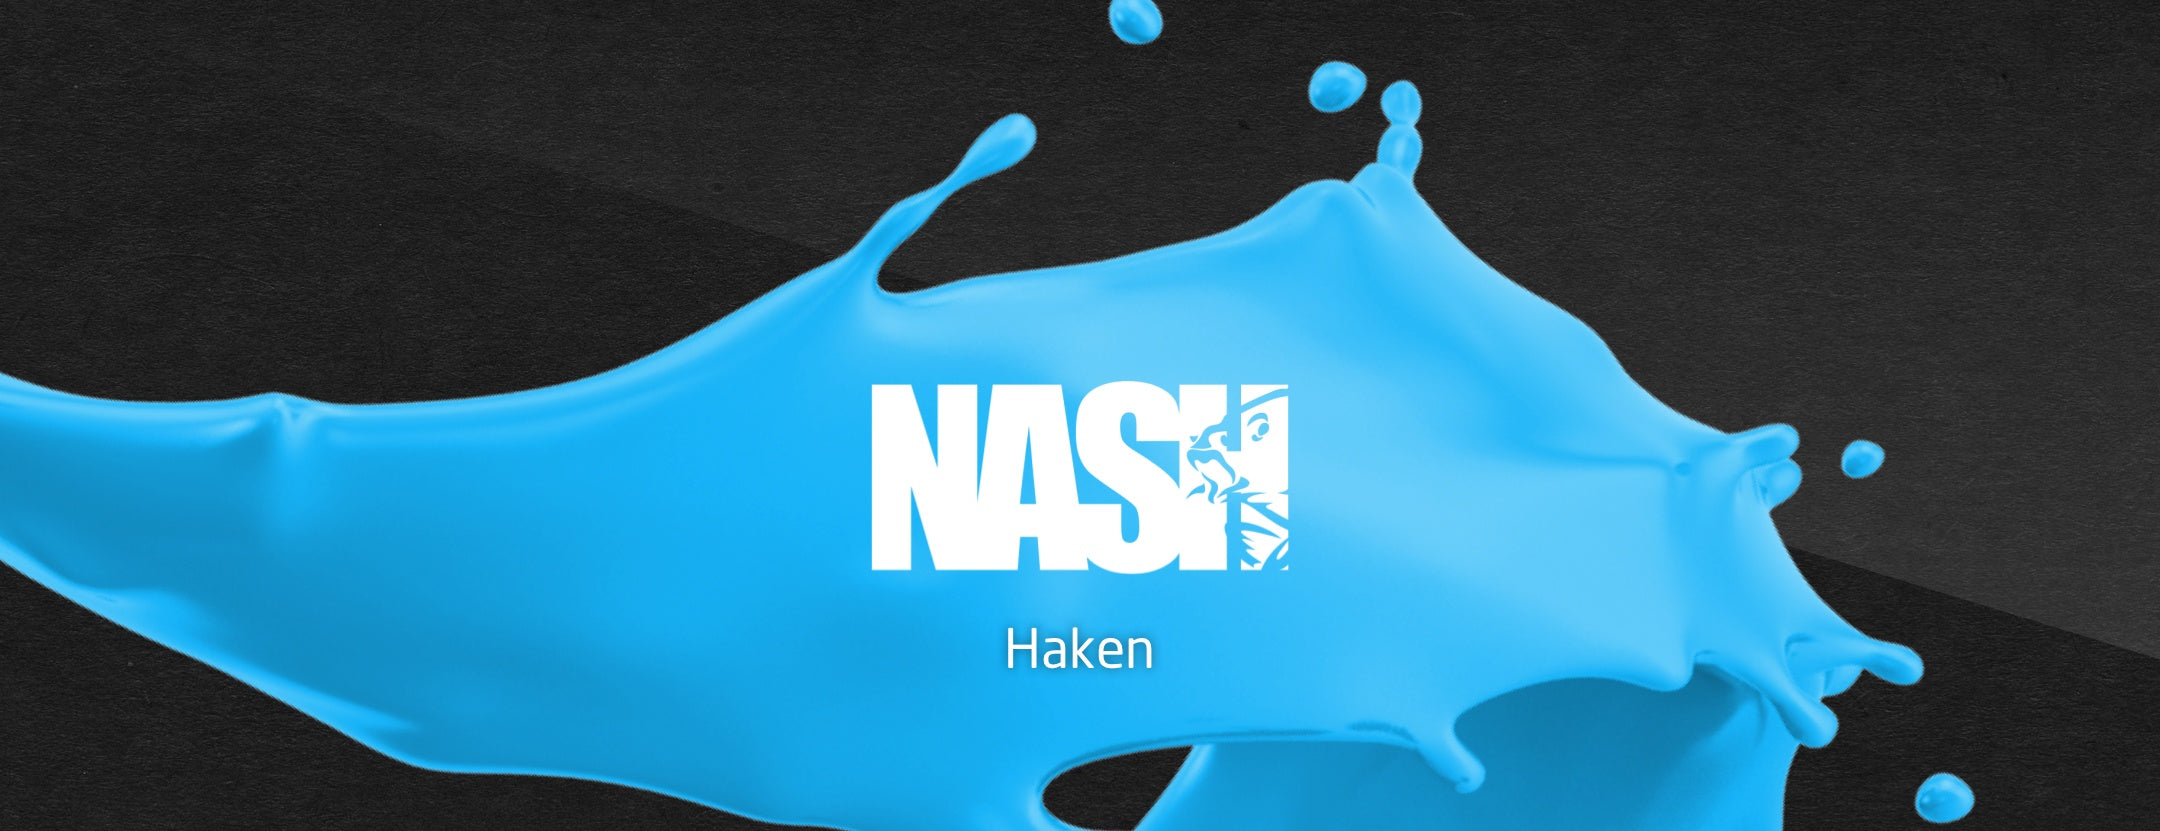 Nash-Haken